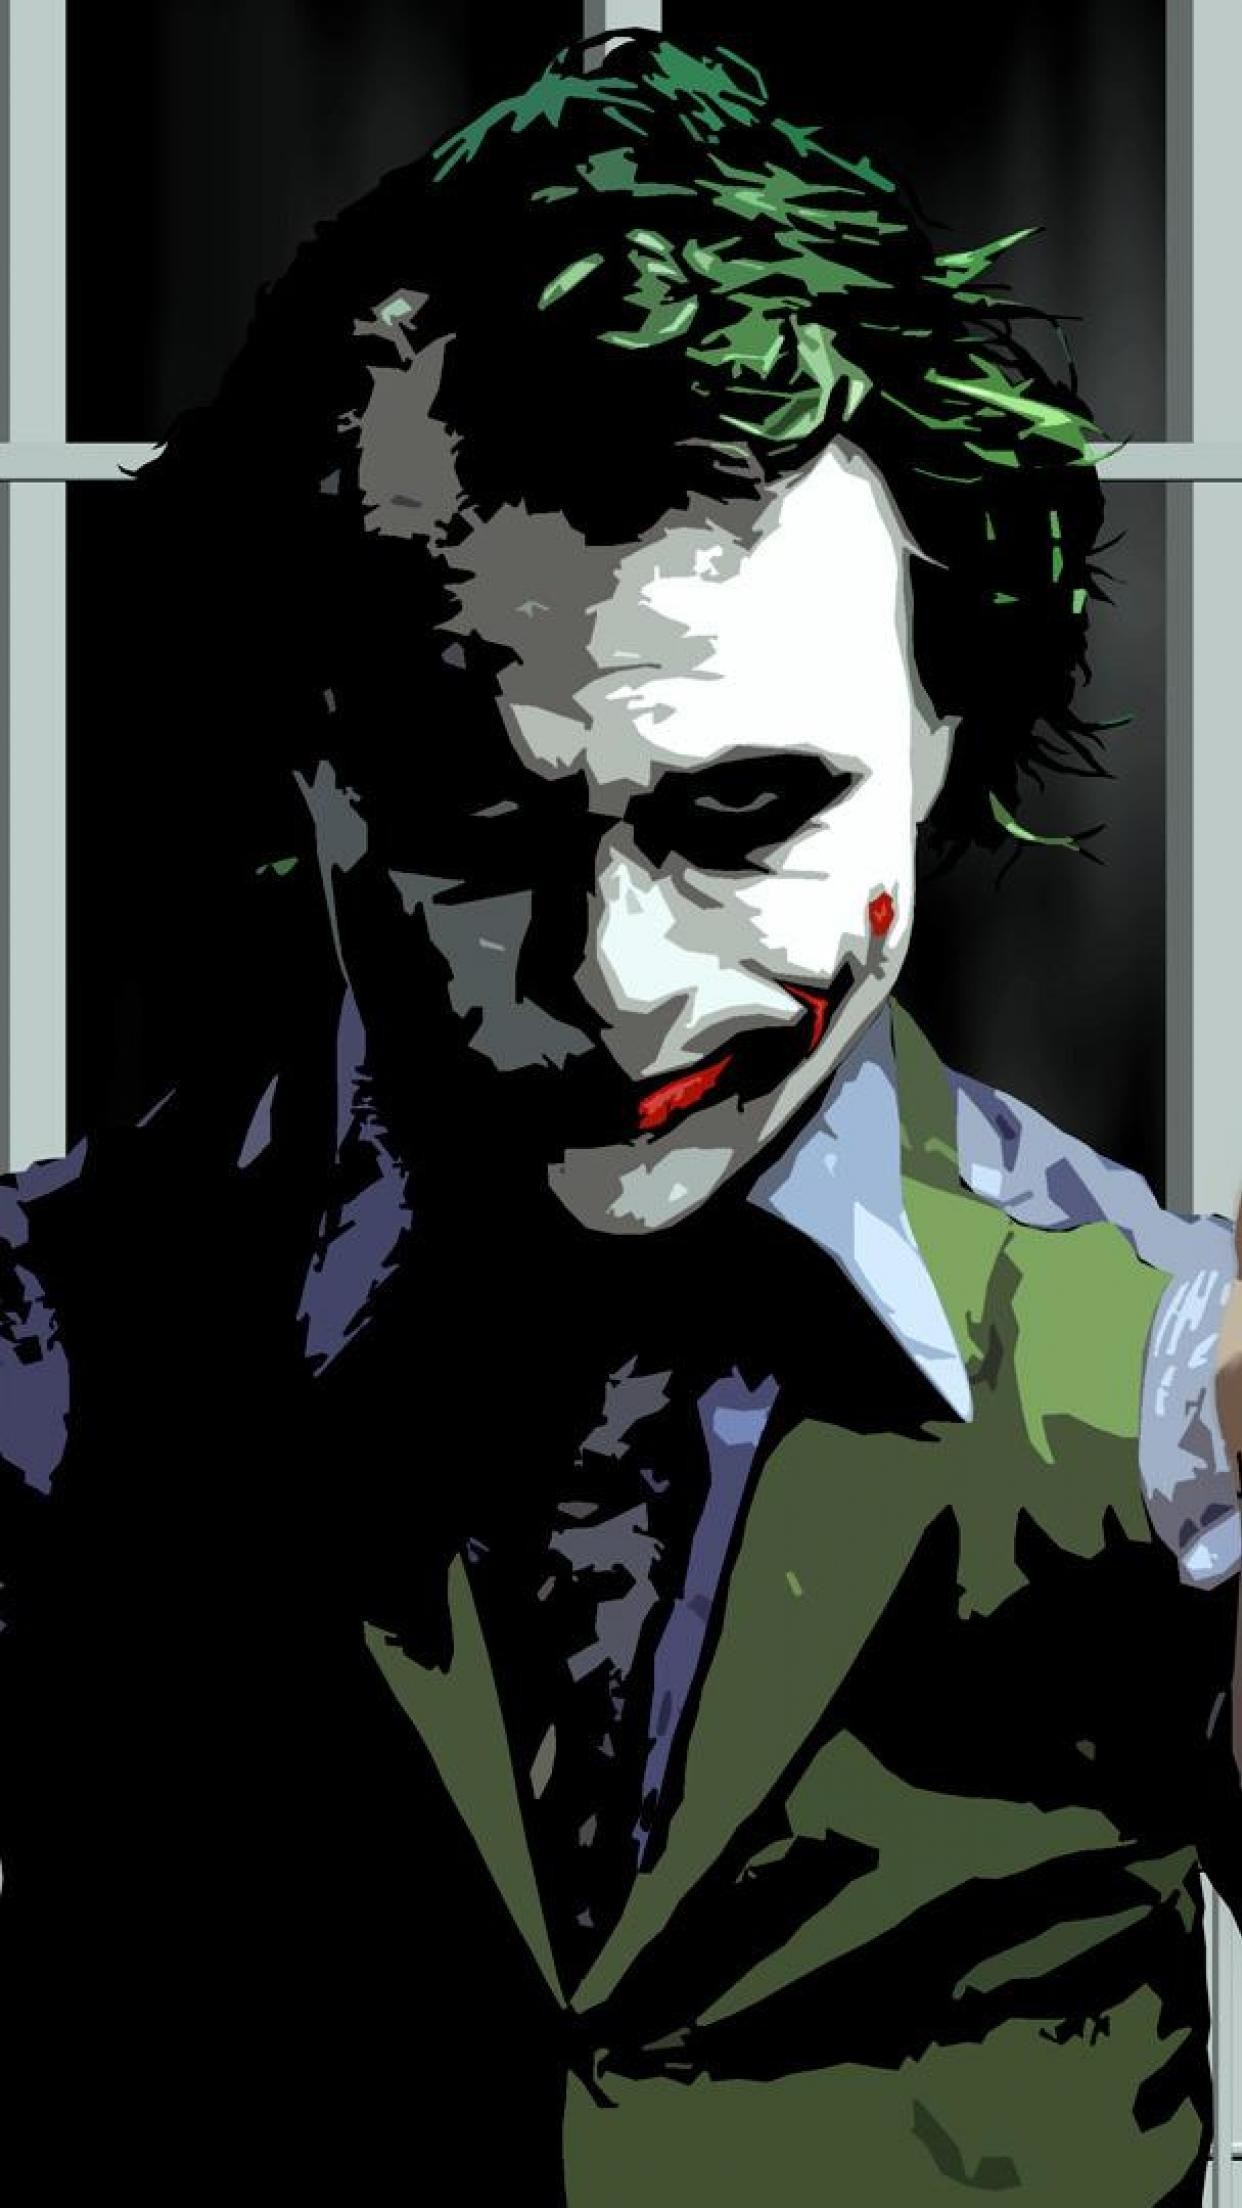 The Joker, Ledger – MTG – Sleeves Trading Card Sleeve Designs Pinterest Joker ledger, Mtg sleeves and Trading card sleeves